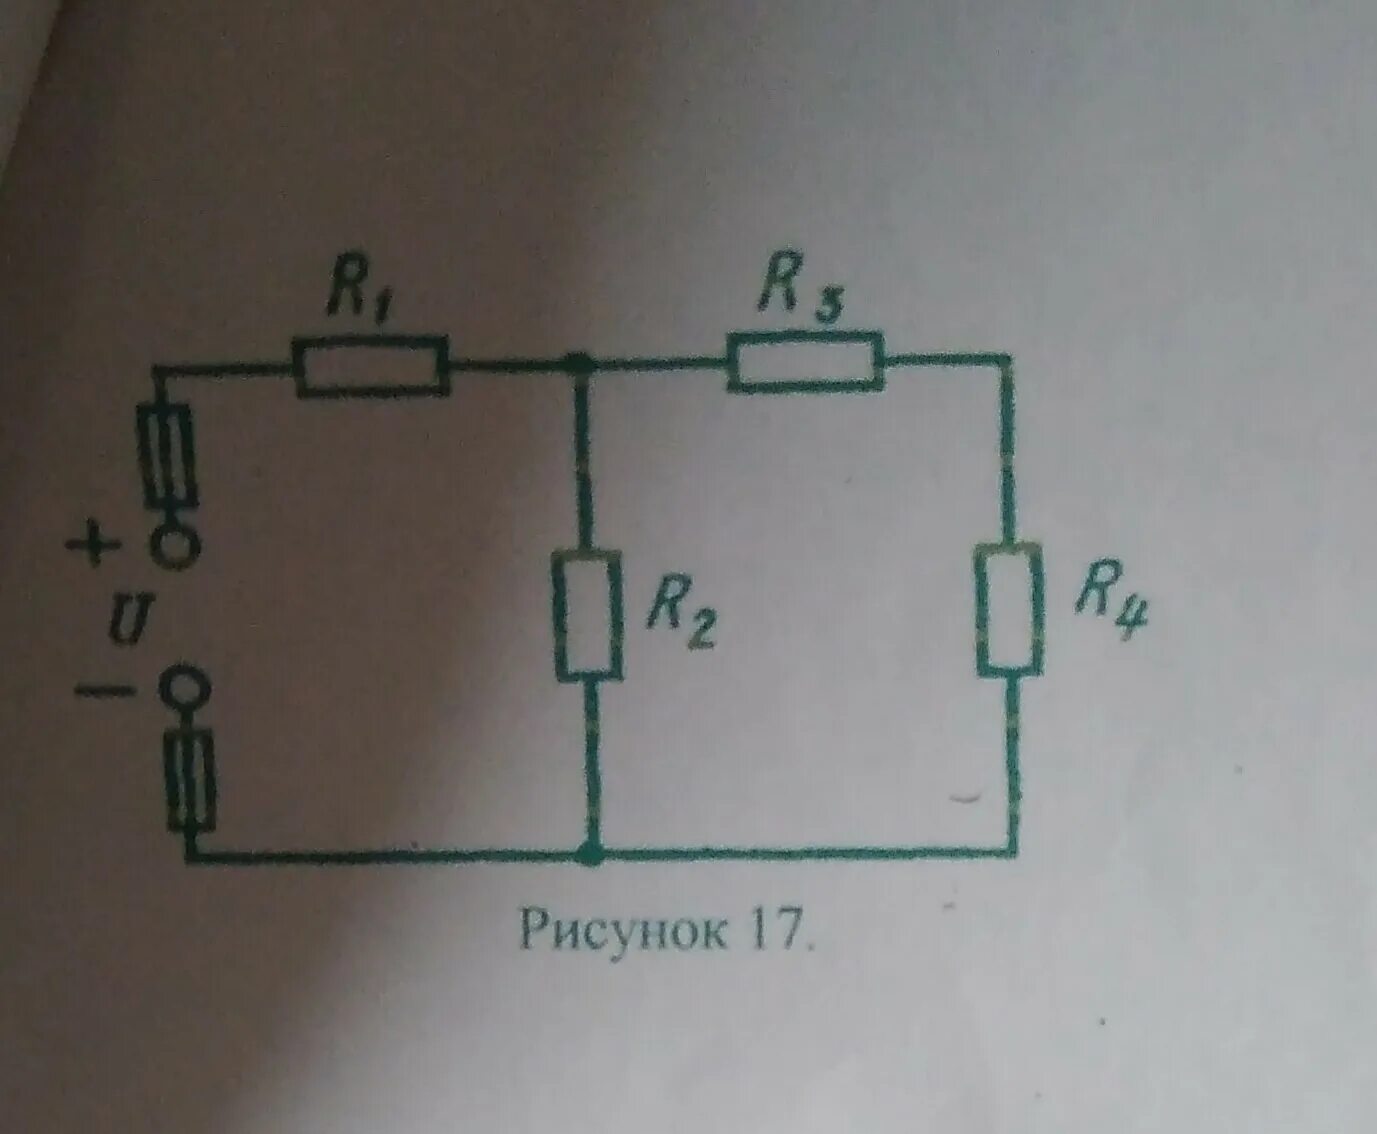 R1 15 r2 6. Электрическая цепь r1 r2 r3 r4. Эквивалентное сопротивление цепи r1 r2 r3 3 ом. Электрическая цепь r1 =r2= r3 =r4 =r5 =r6=2ом l1=?. Вычислить эквивалентное сопротивление r 2 ом.